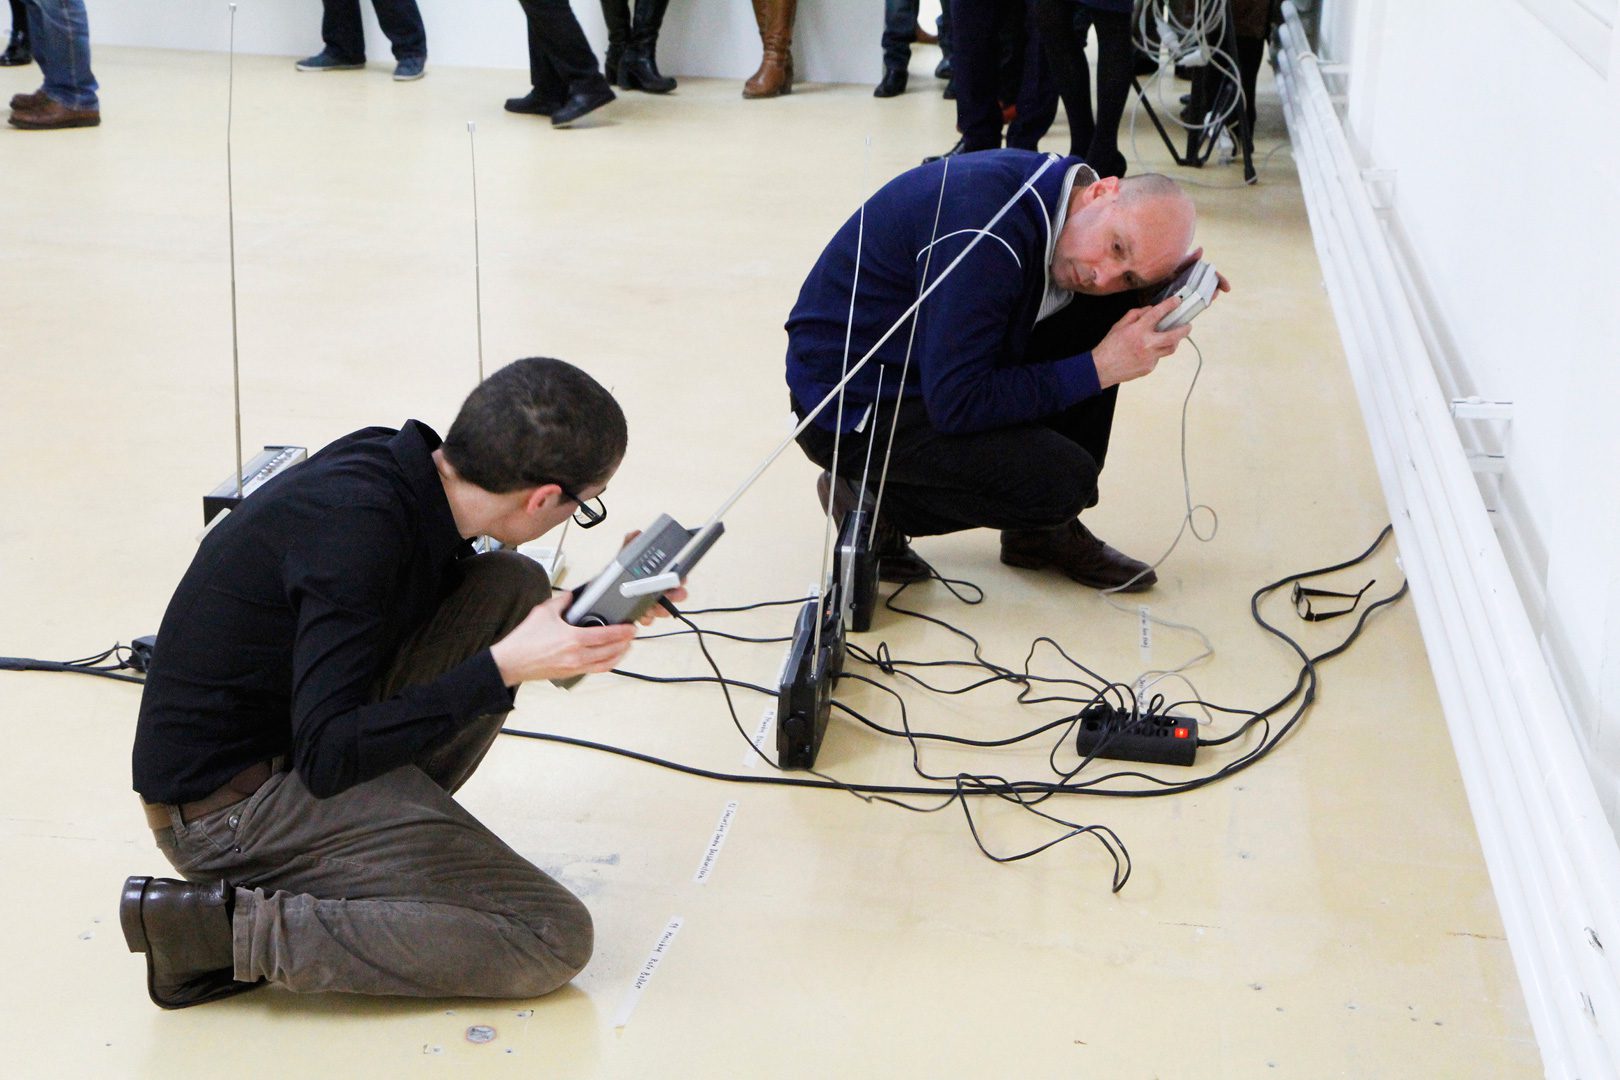 zwei Personen lauschen am Boden hockend nach alten Radiogeräten